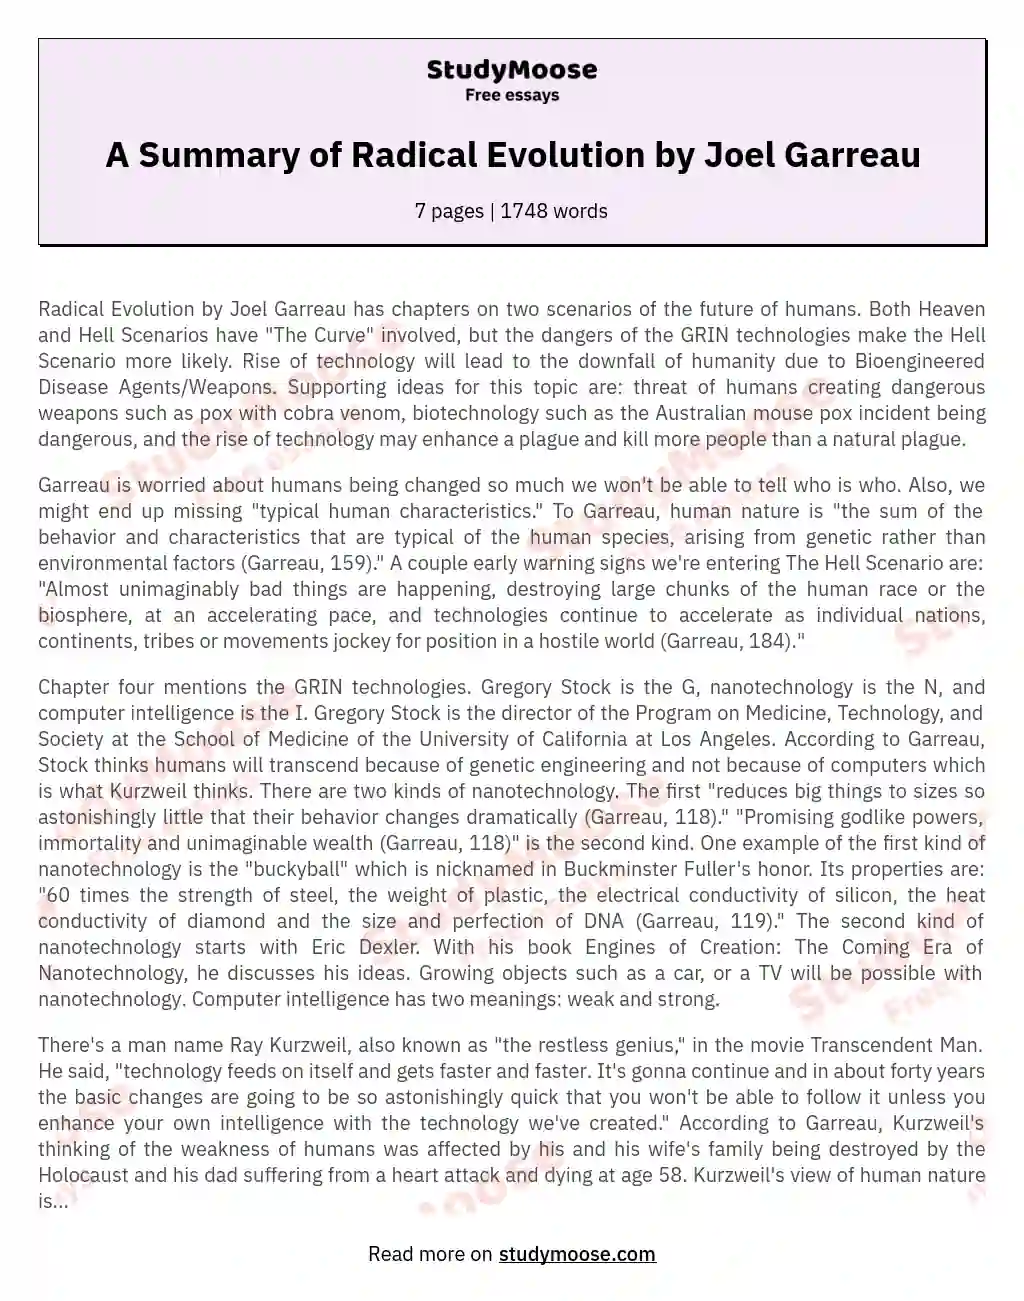 A Summary of Radical Evolution by Joel Garreau essay